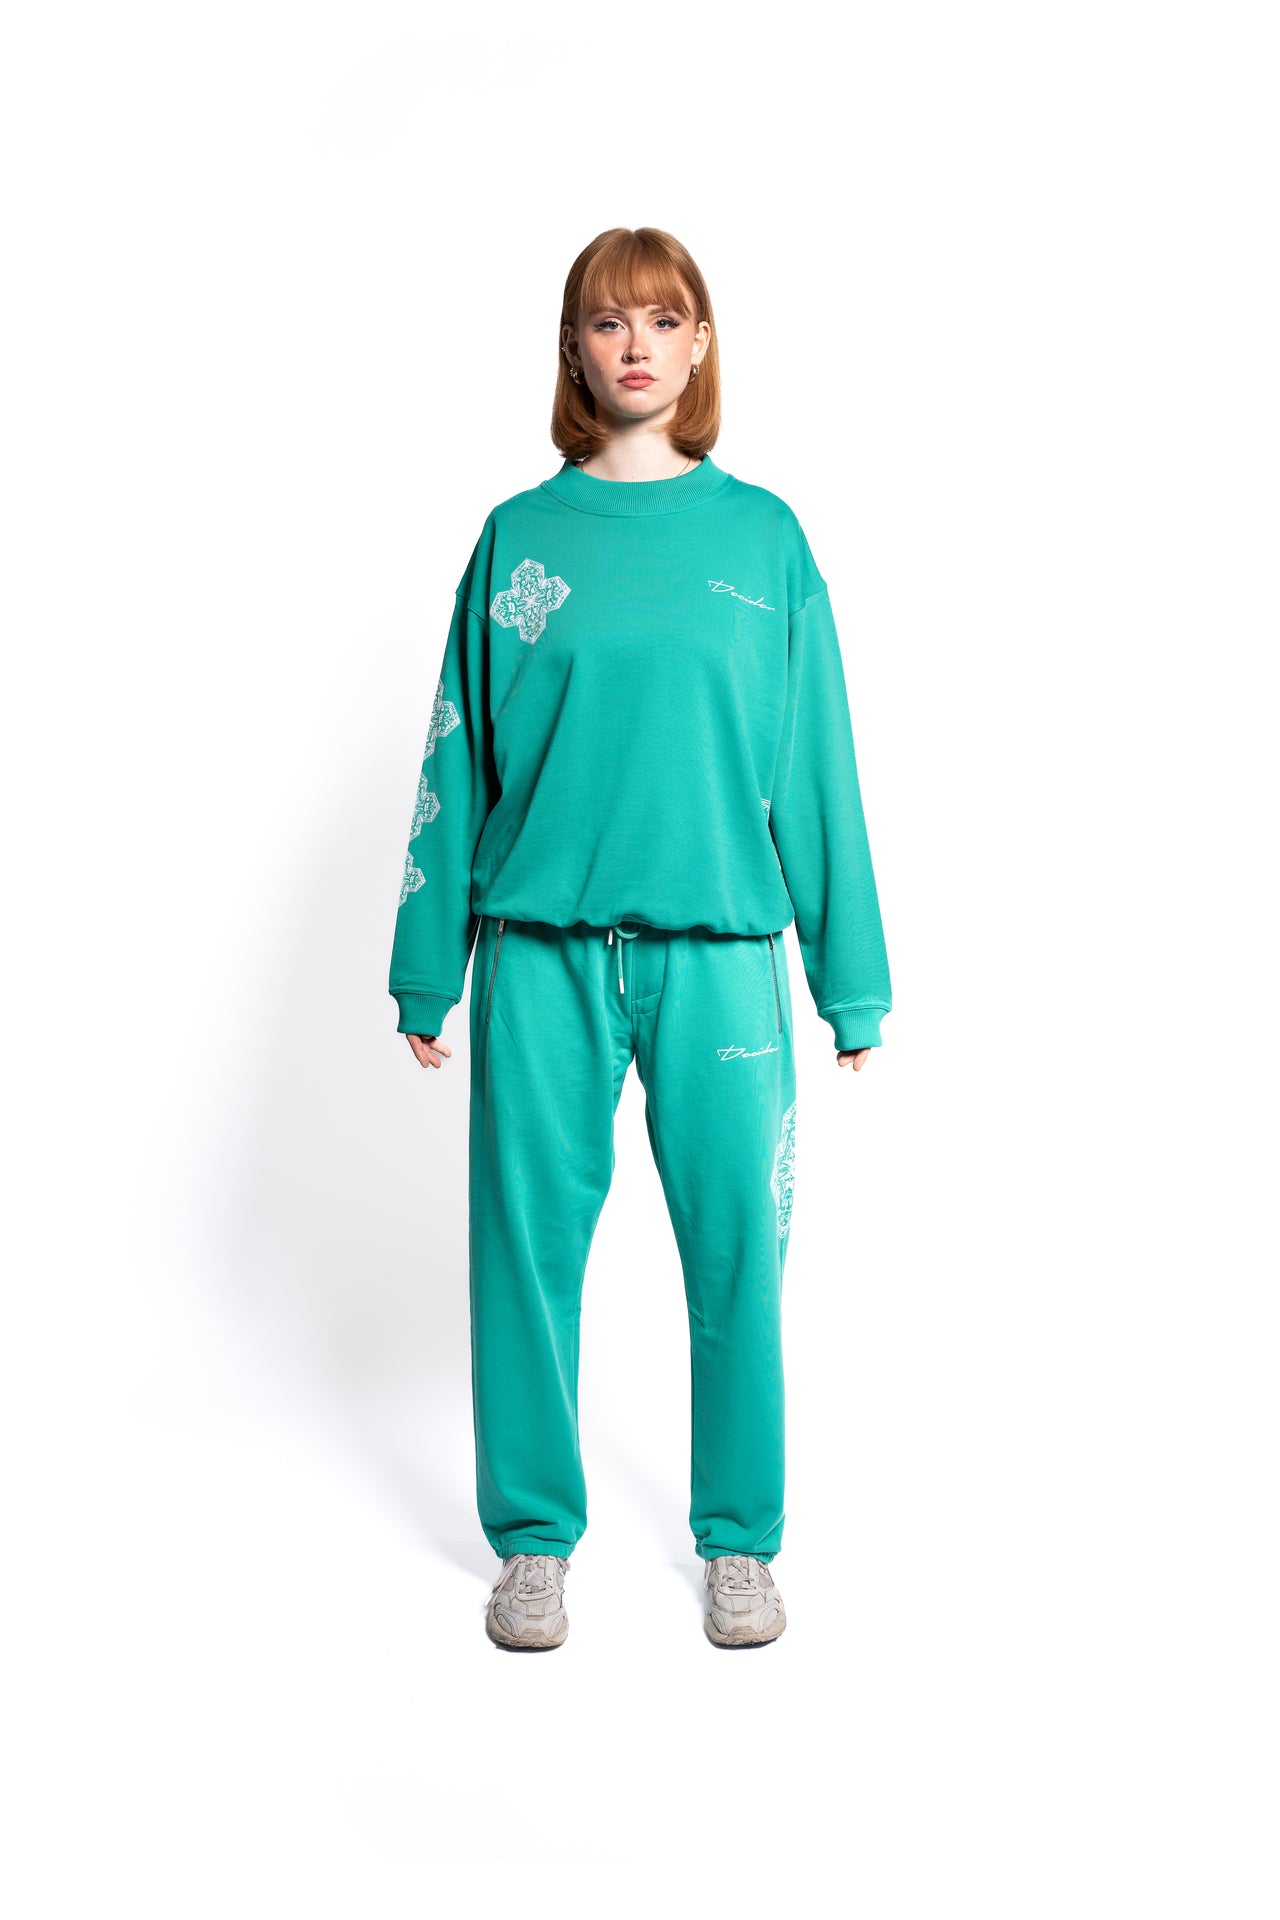 Weibliches Model präsentiert ein smaragdgrünes, übergroßes Sweatshirt mit passender Jogginghose, die mit weißen Mustern akzentuiert ist